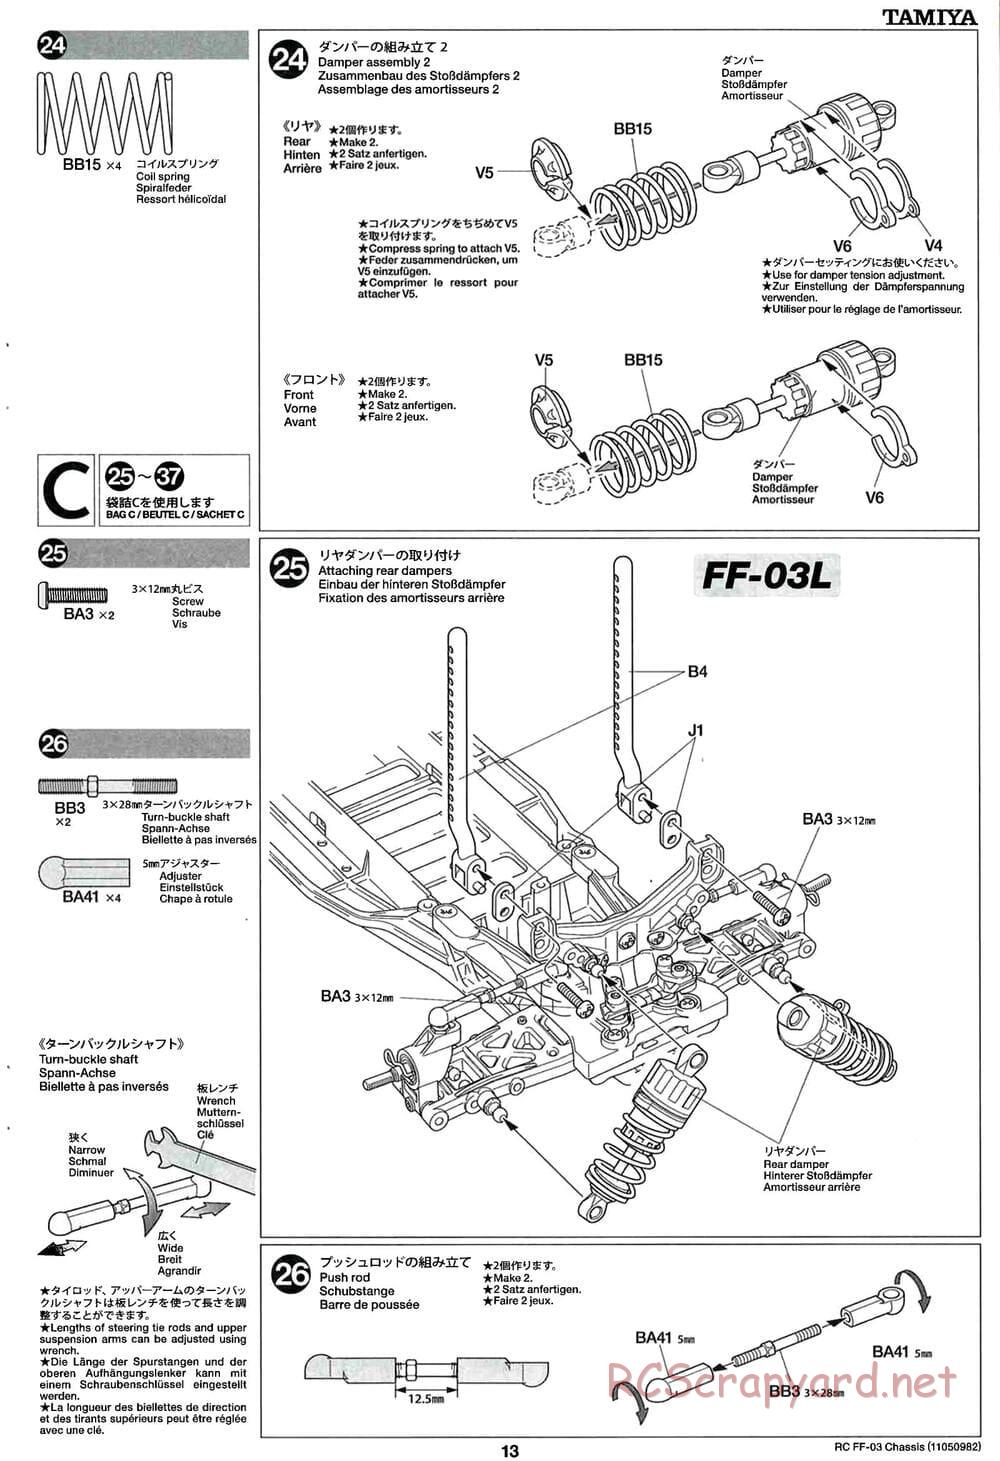 Tamiya - Castrol Honda Civic VTi - FF-03 Chassis - Manual - Page 13